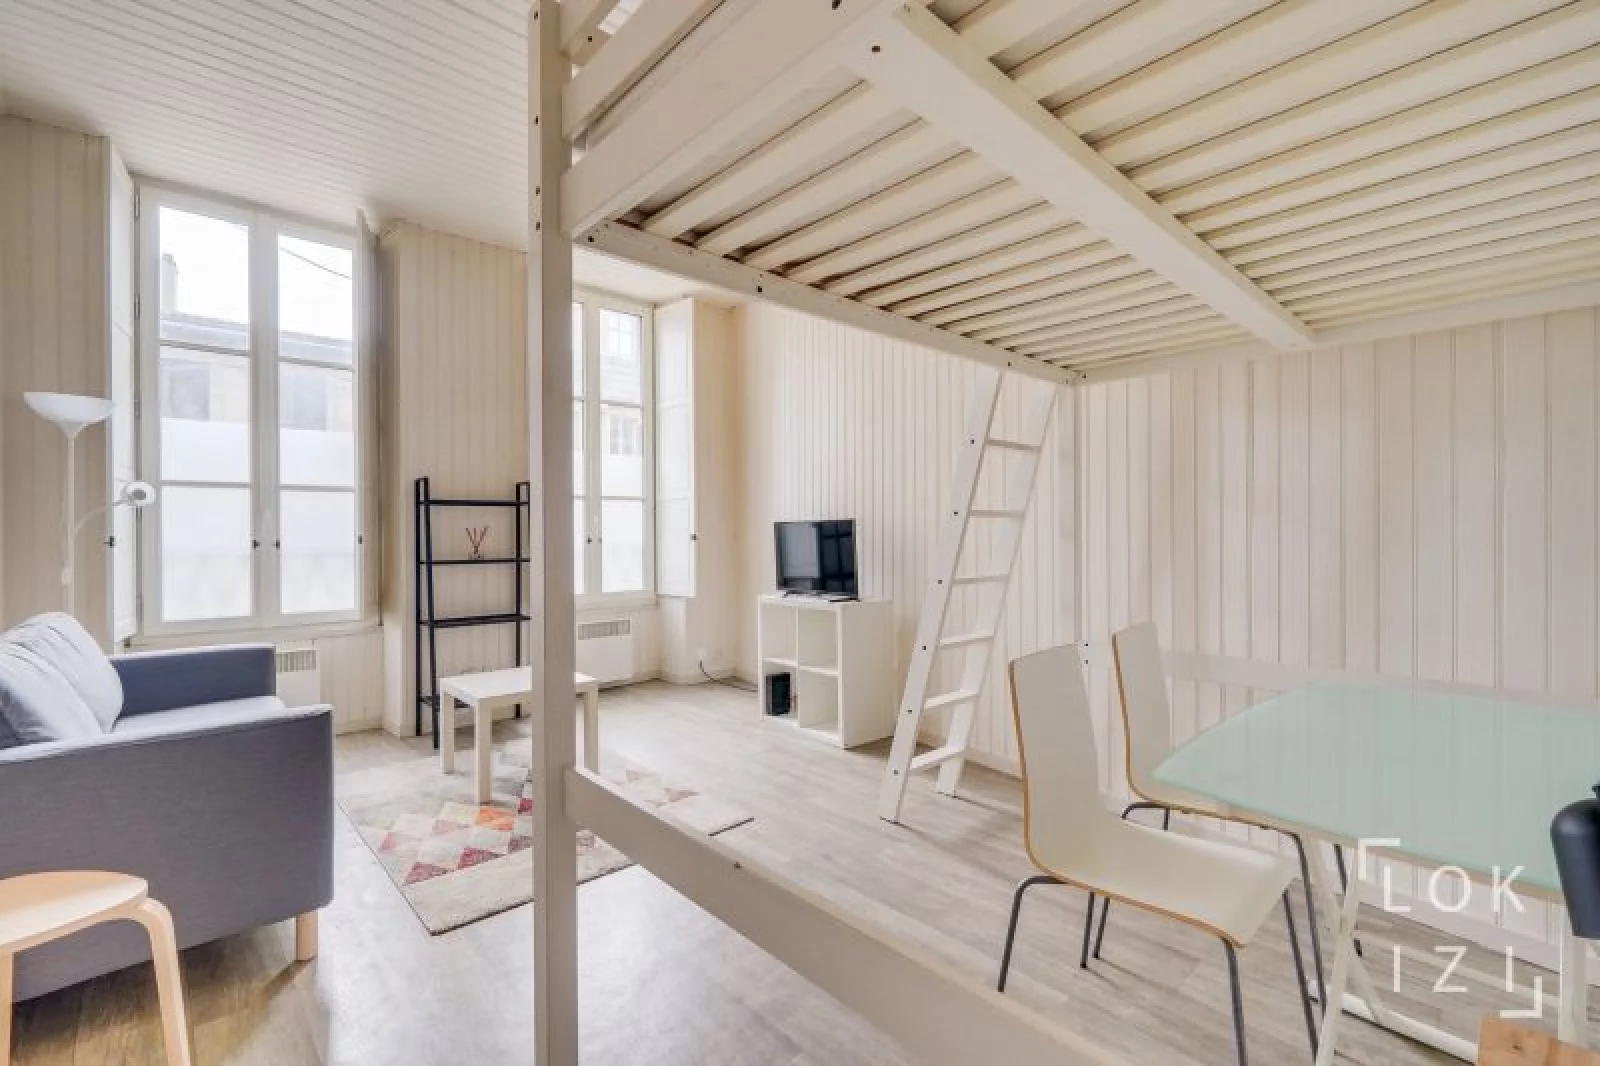 Location studio meublé 28m² (Bordeaux - Victoire)